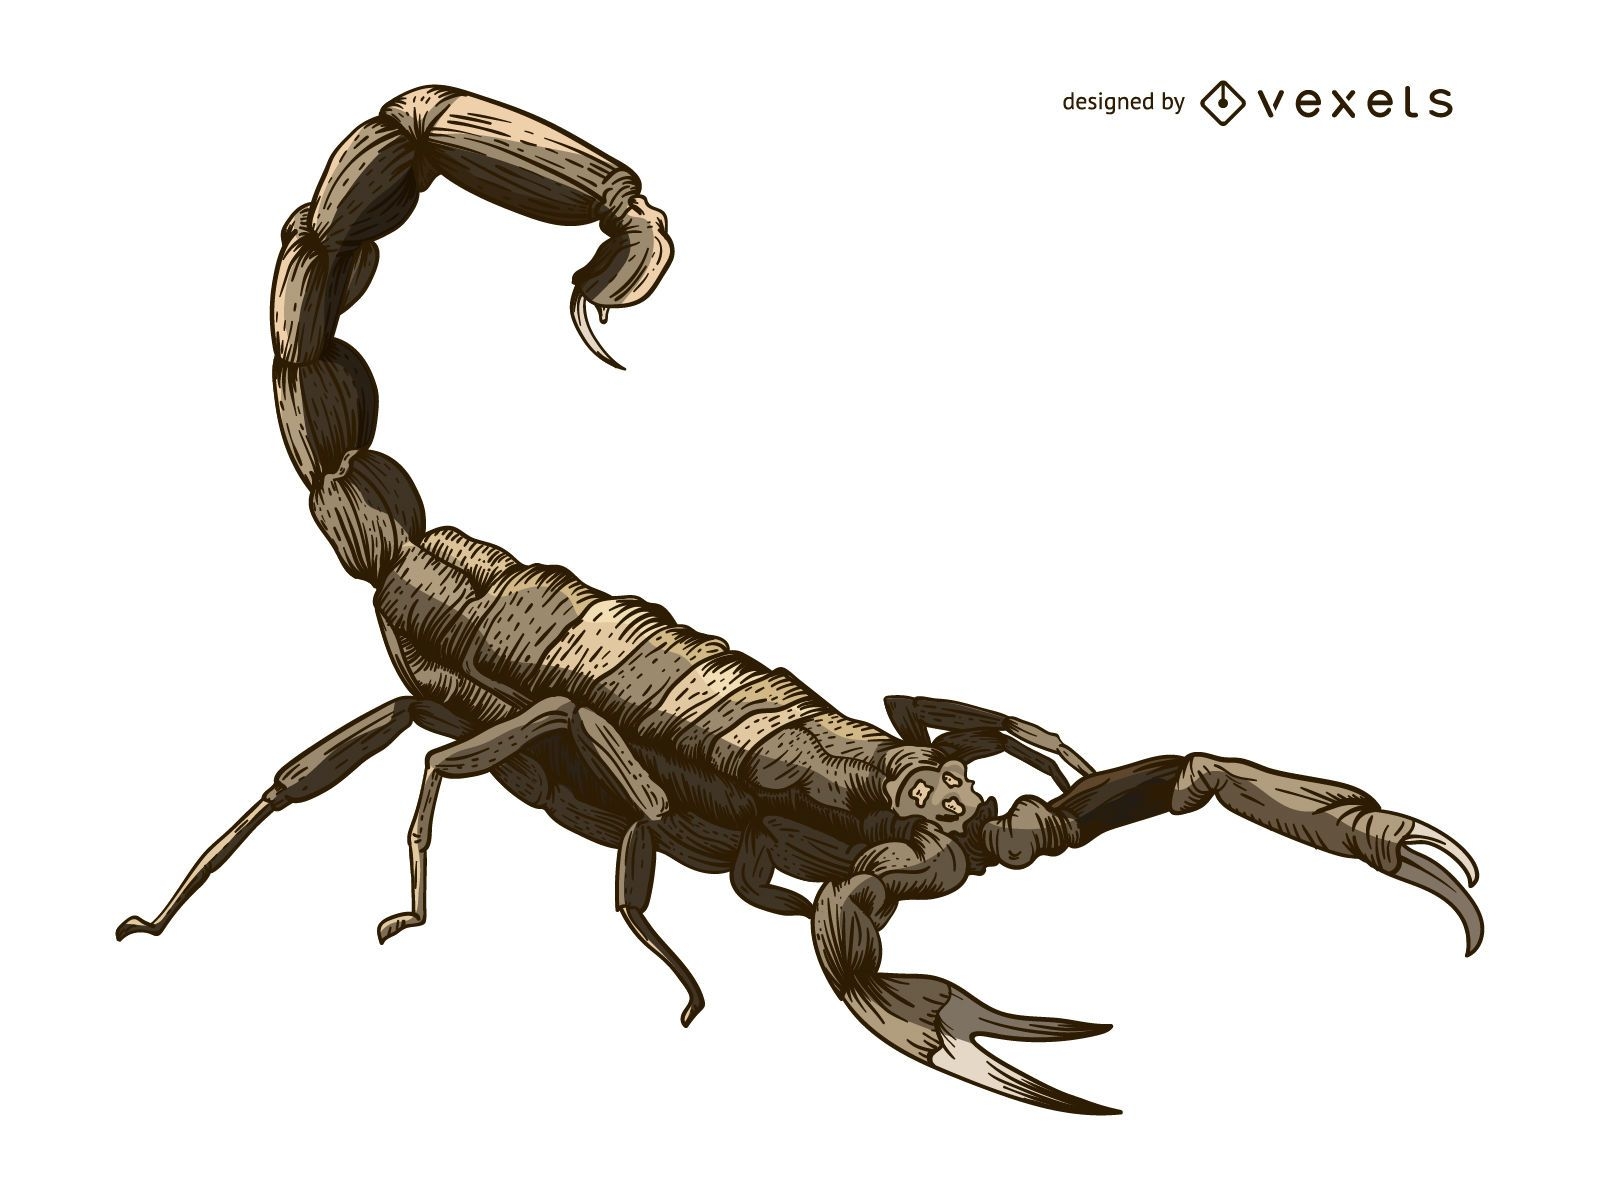 Scorpion illustration tattoo style